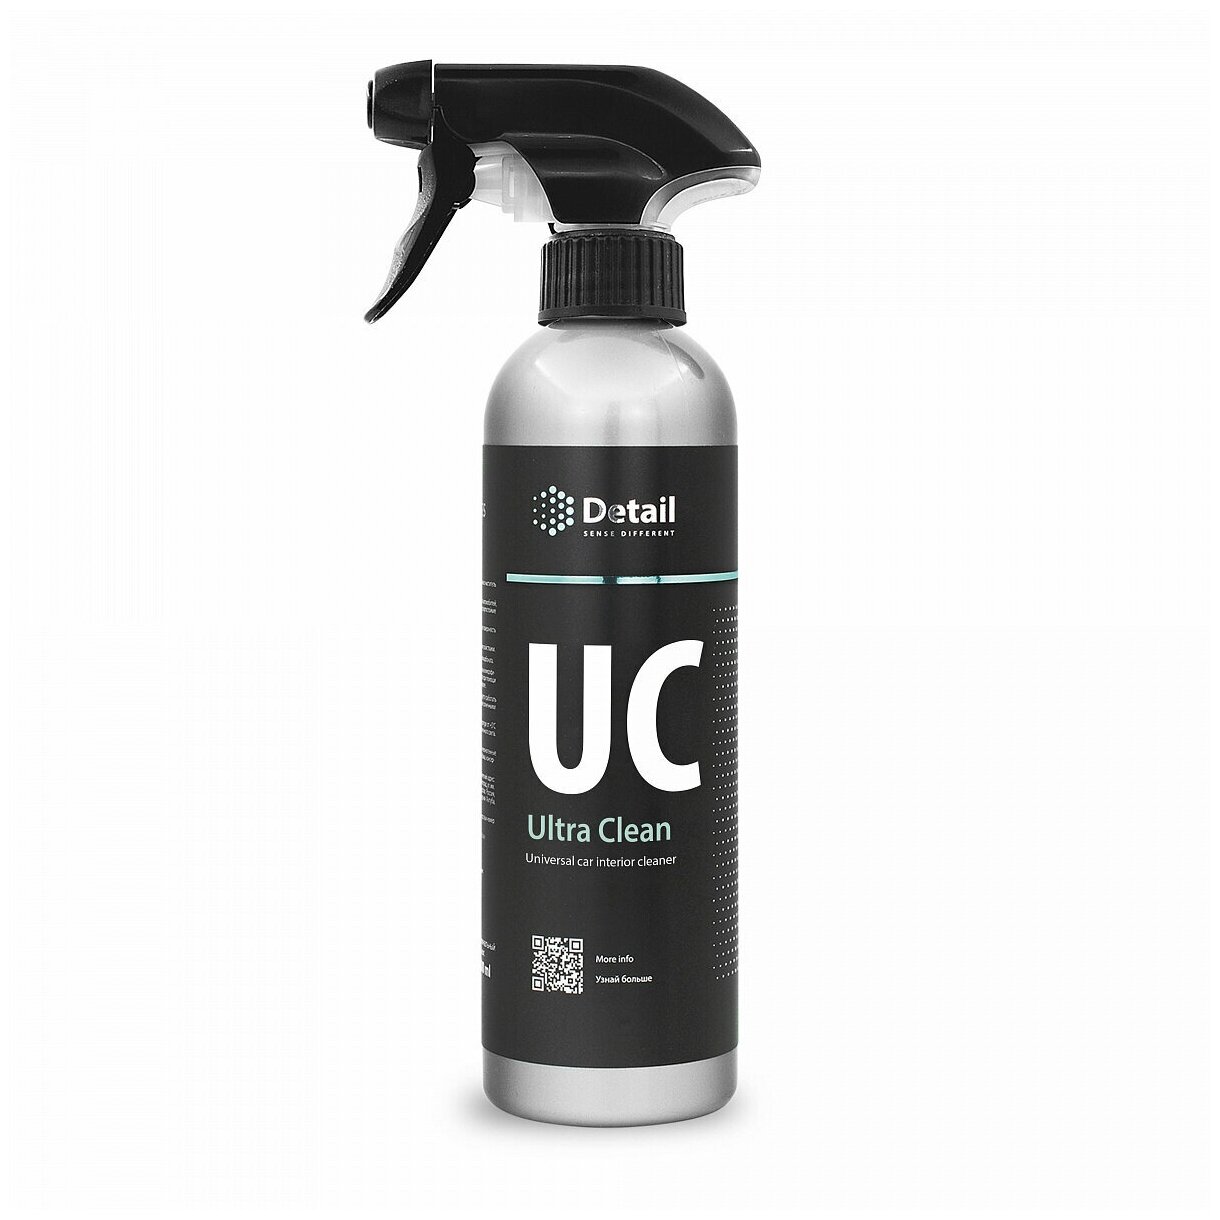 Универсальный очиститель Detail UC "Ultra Clean" 500мл